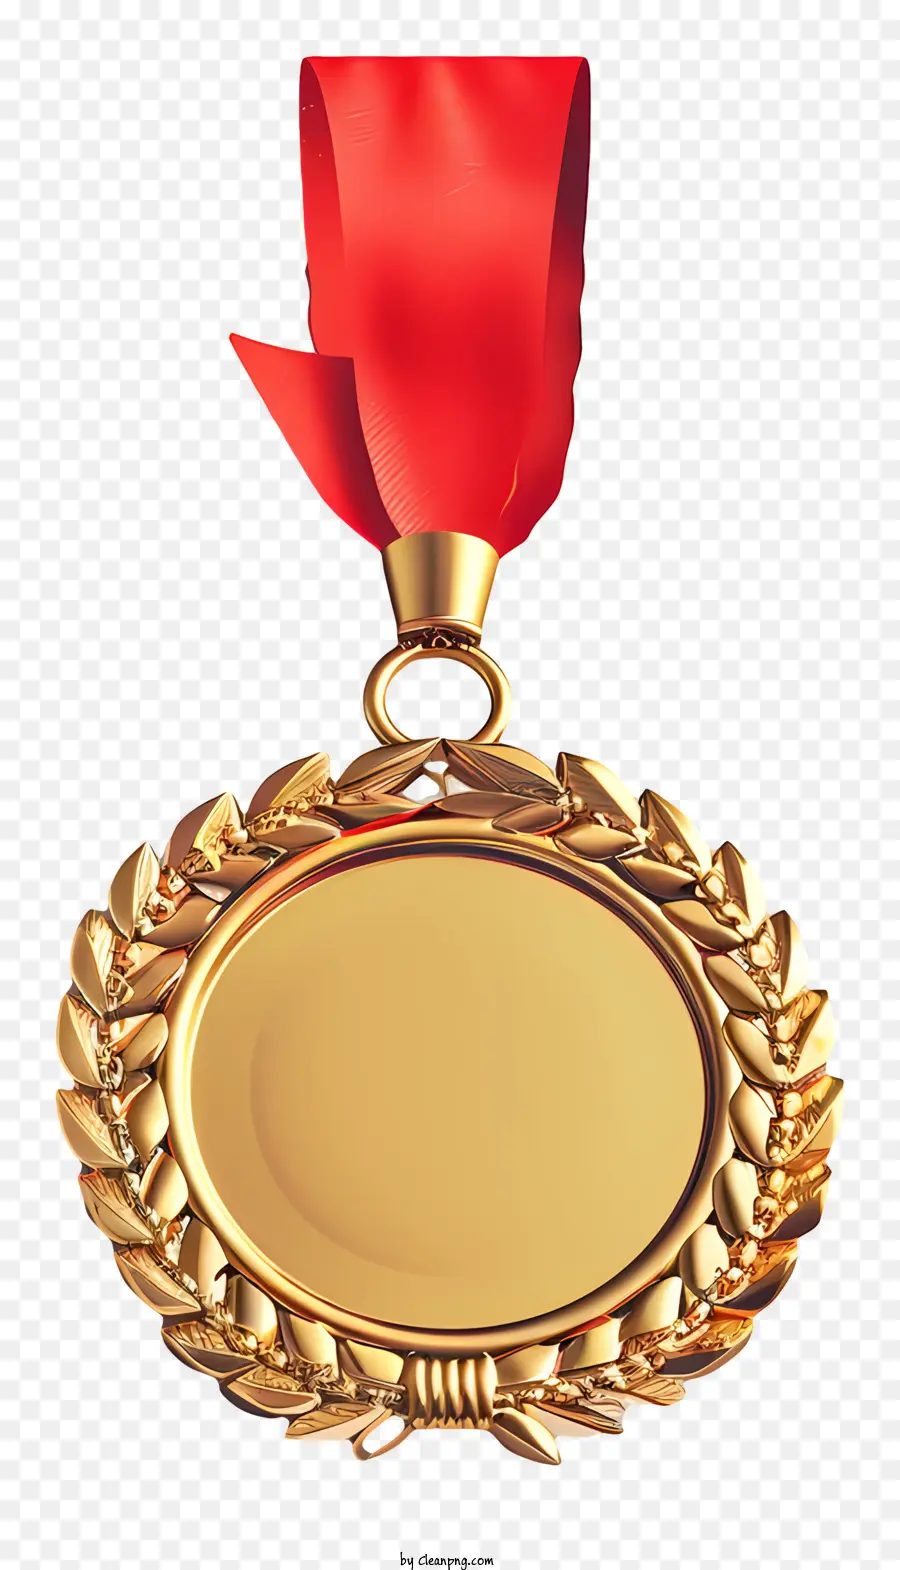 medaglia d'oro - Medaglia ovale dorata con nastro rosso